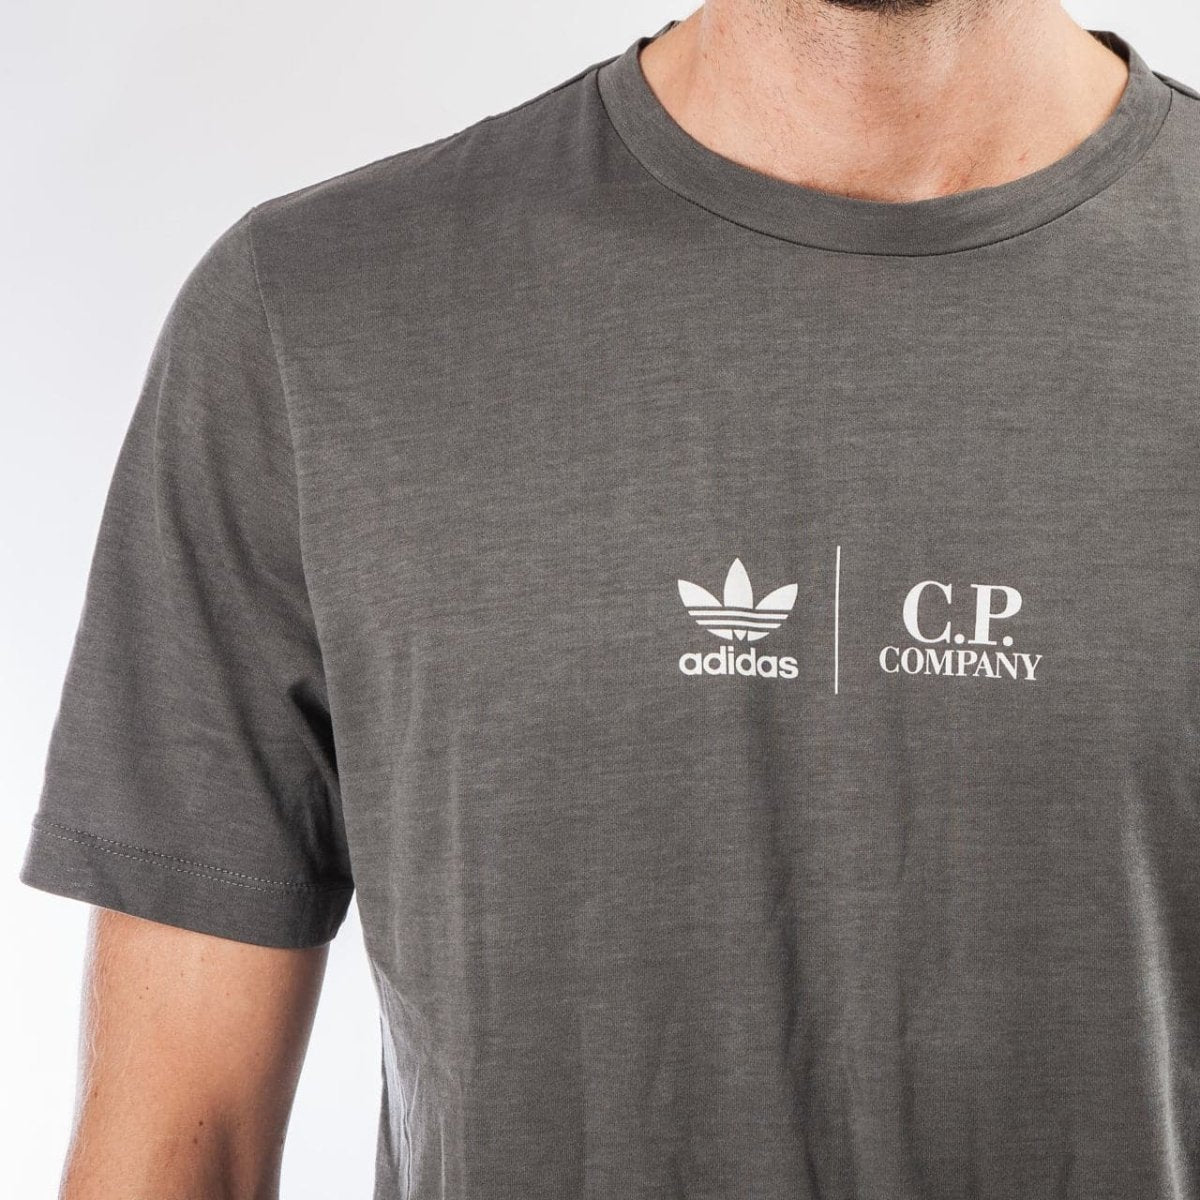 adidas by C.P. Company T-Shirt (Grau)  - Allike Store